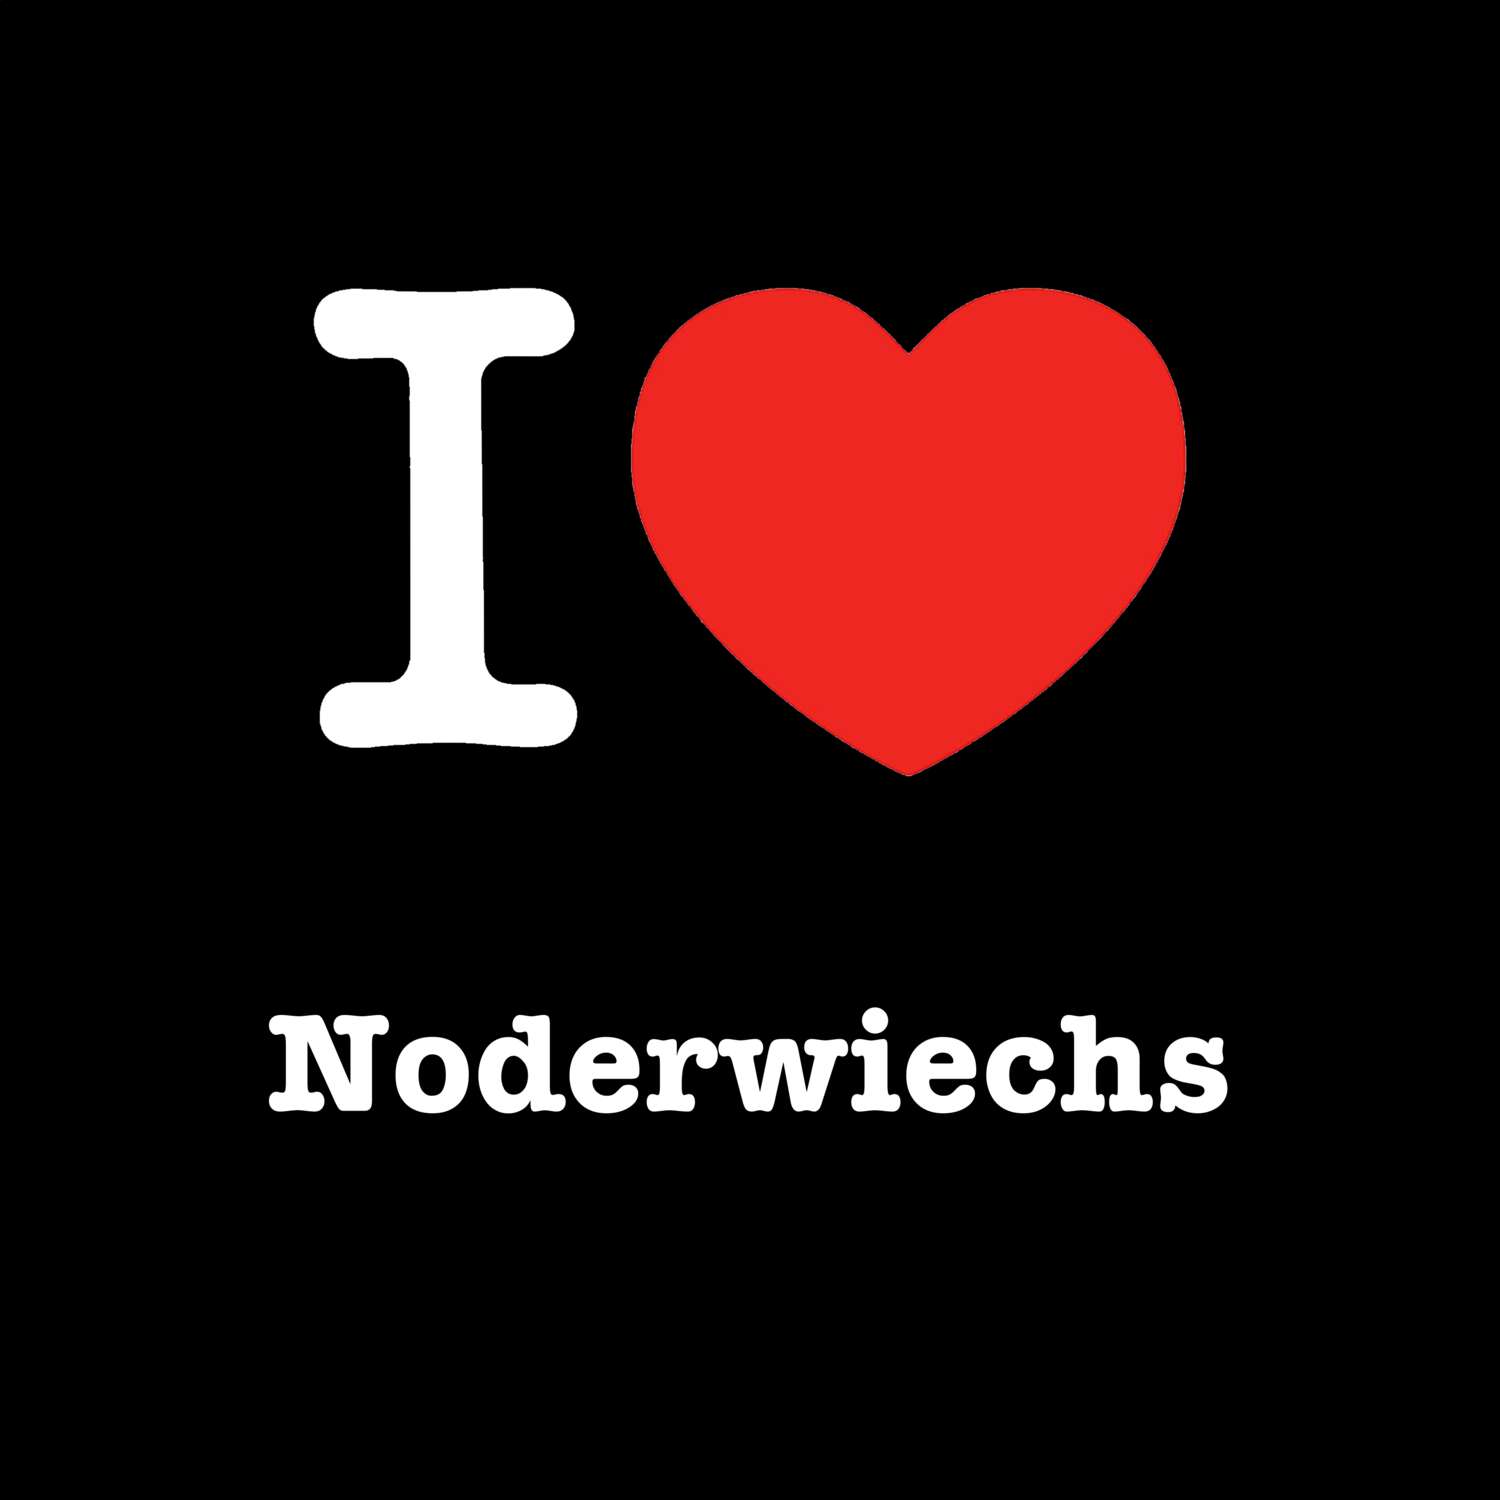 Noderwiechs T-Shirt »I love«